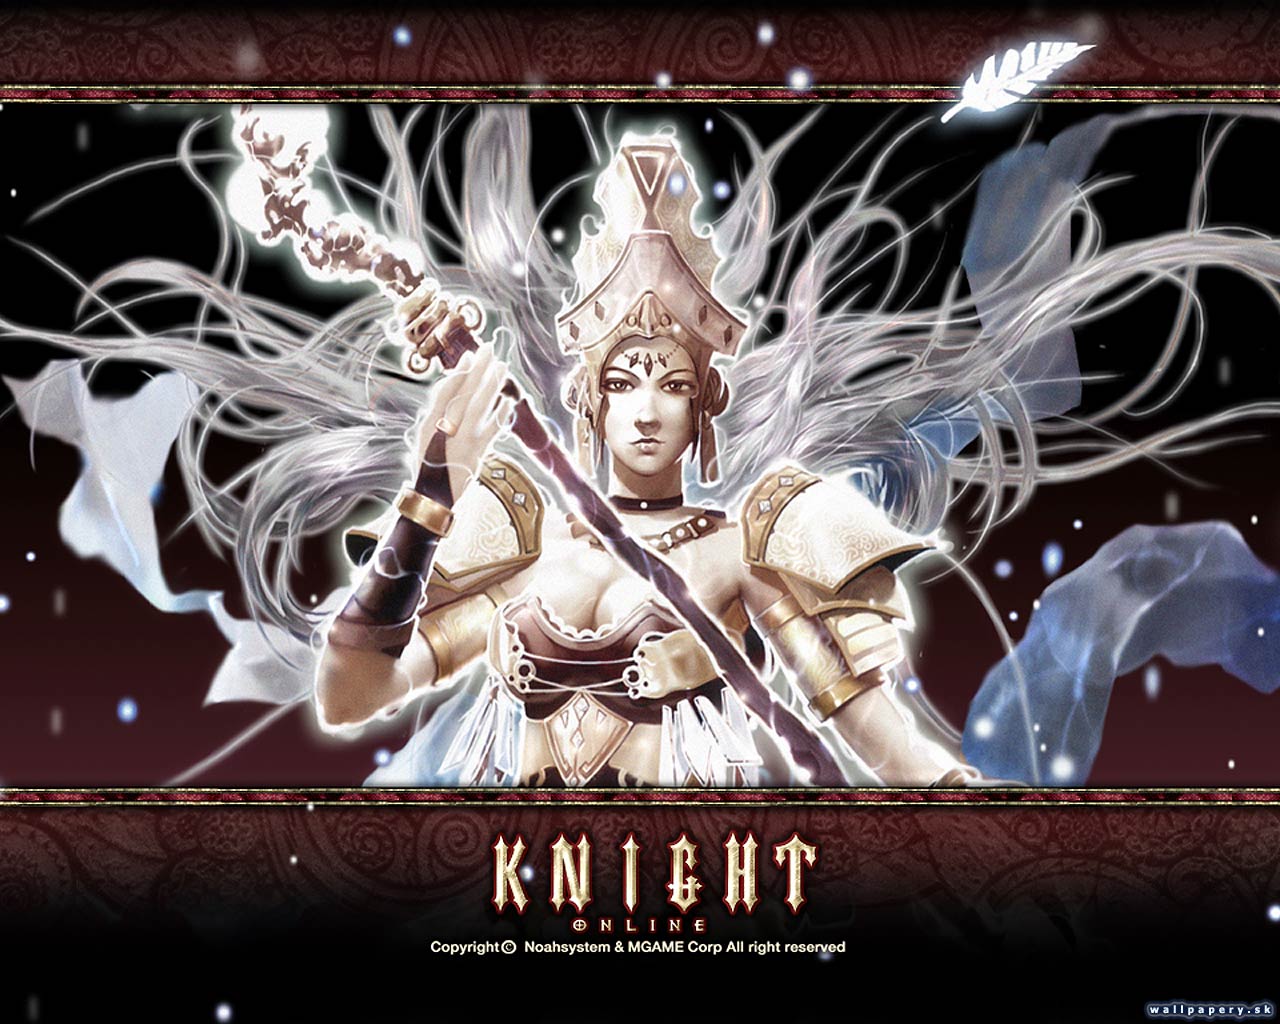 Knight Online - wallpaper 4